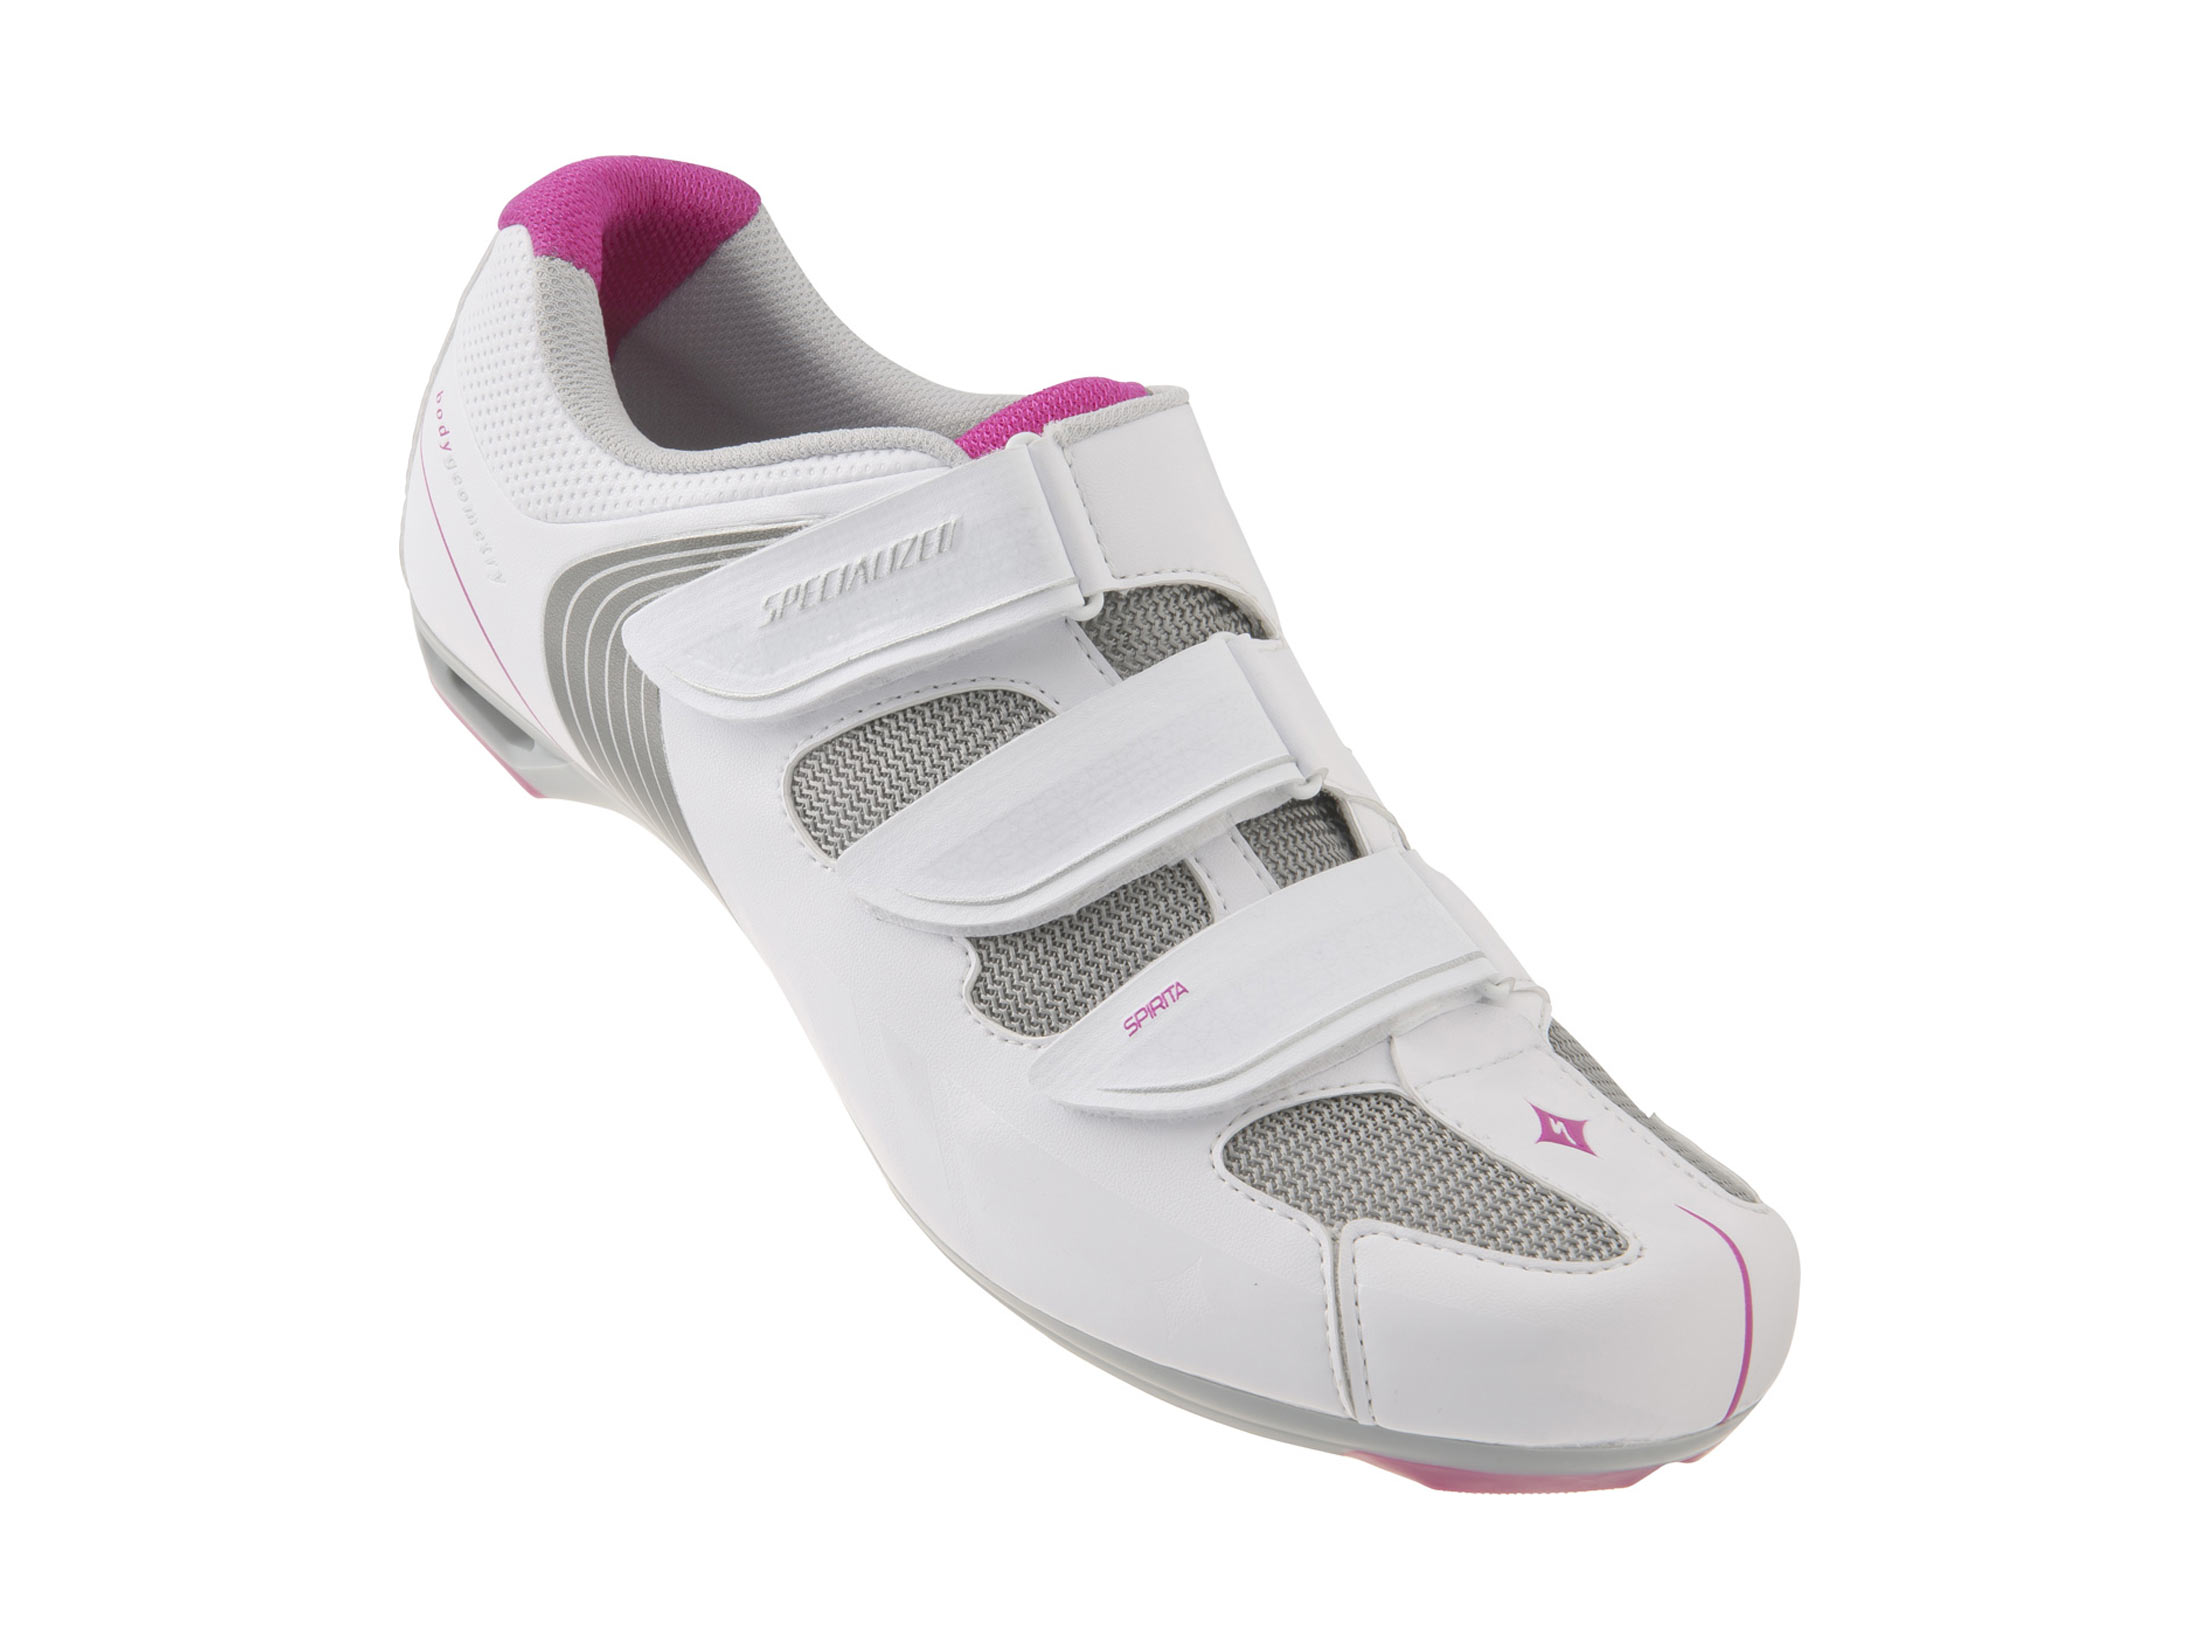 Παπούτσια Specialized Spirita Women's Road - White / Pink